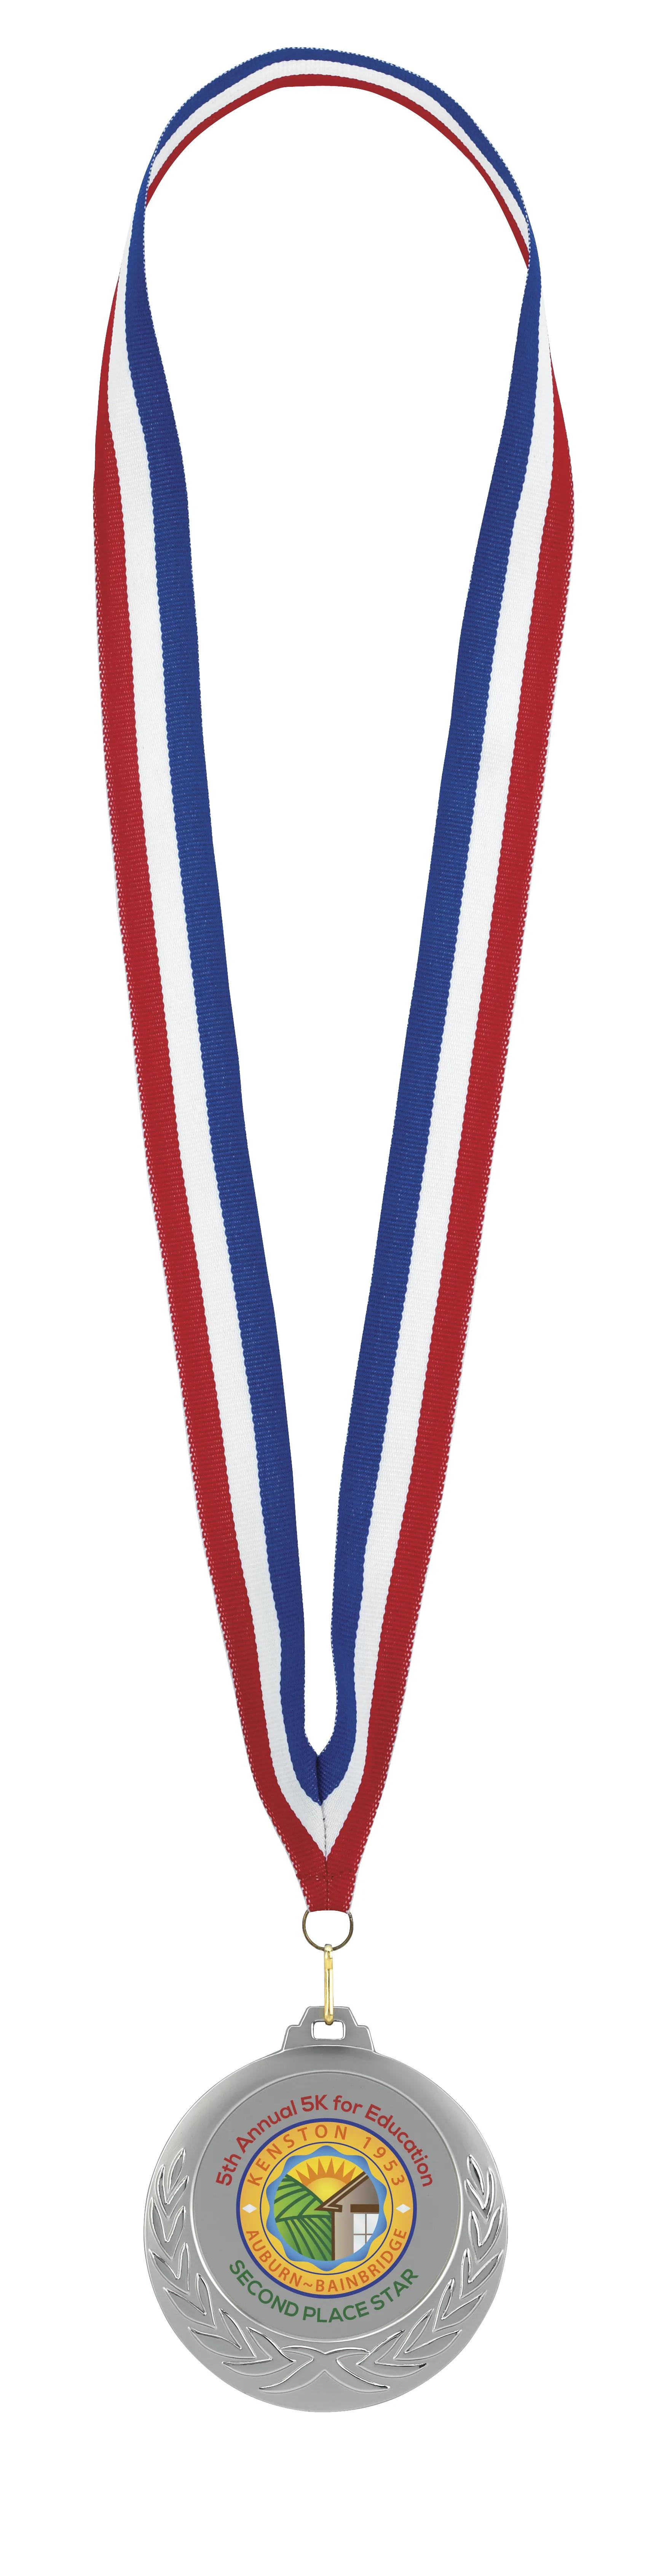 Laurel Wreath Medal 15 of 26